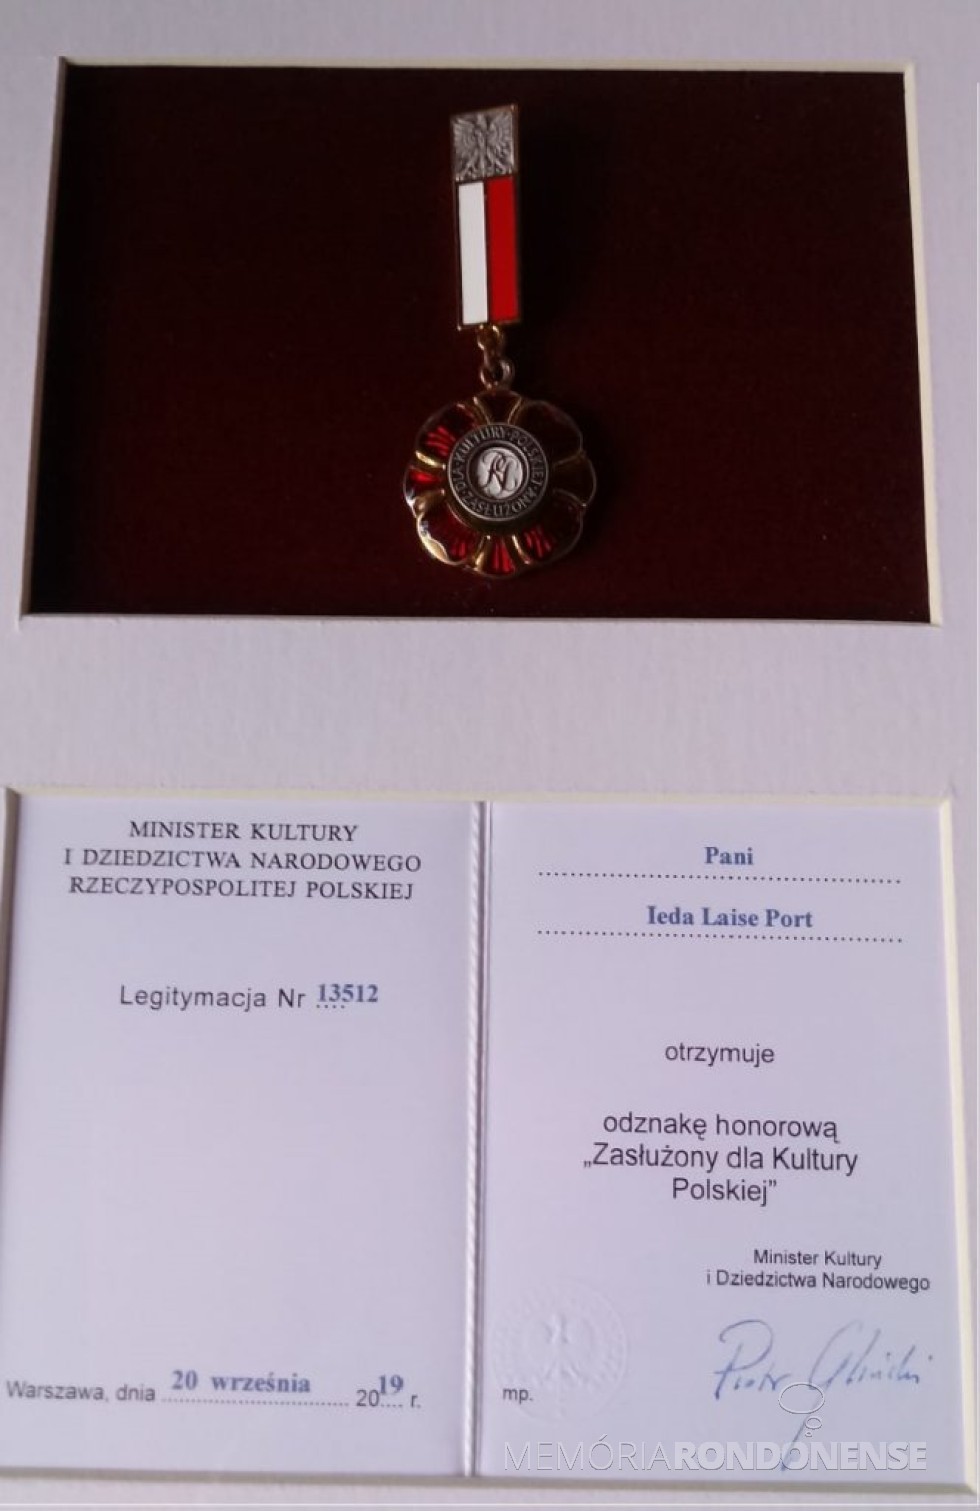 || Comenda e diploma recebidos pela rondonense Ieda Laise Port, em reconhecimento ao seu trabalho em favor da cultura polonesa.
Imagem: Acervo pessoal - FOTO  15  -